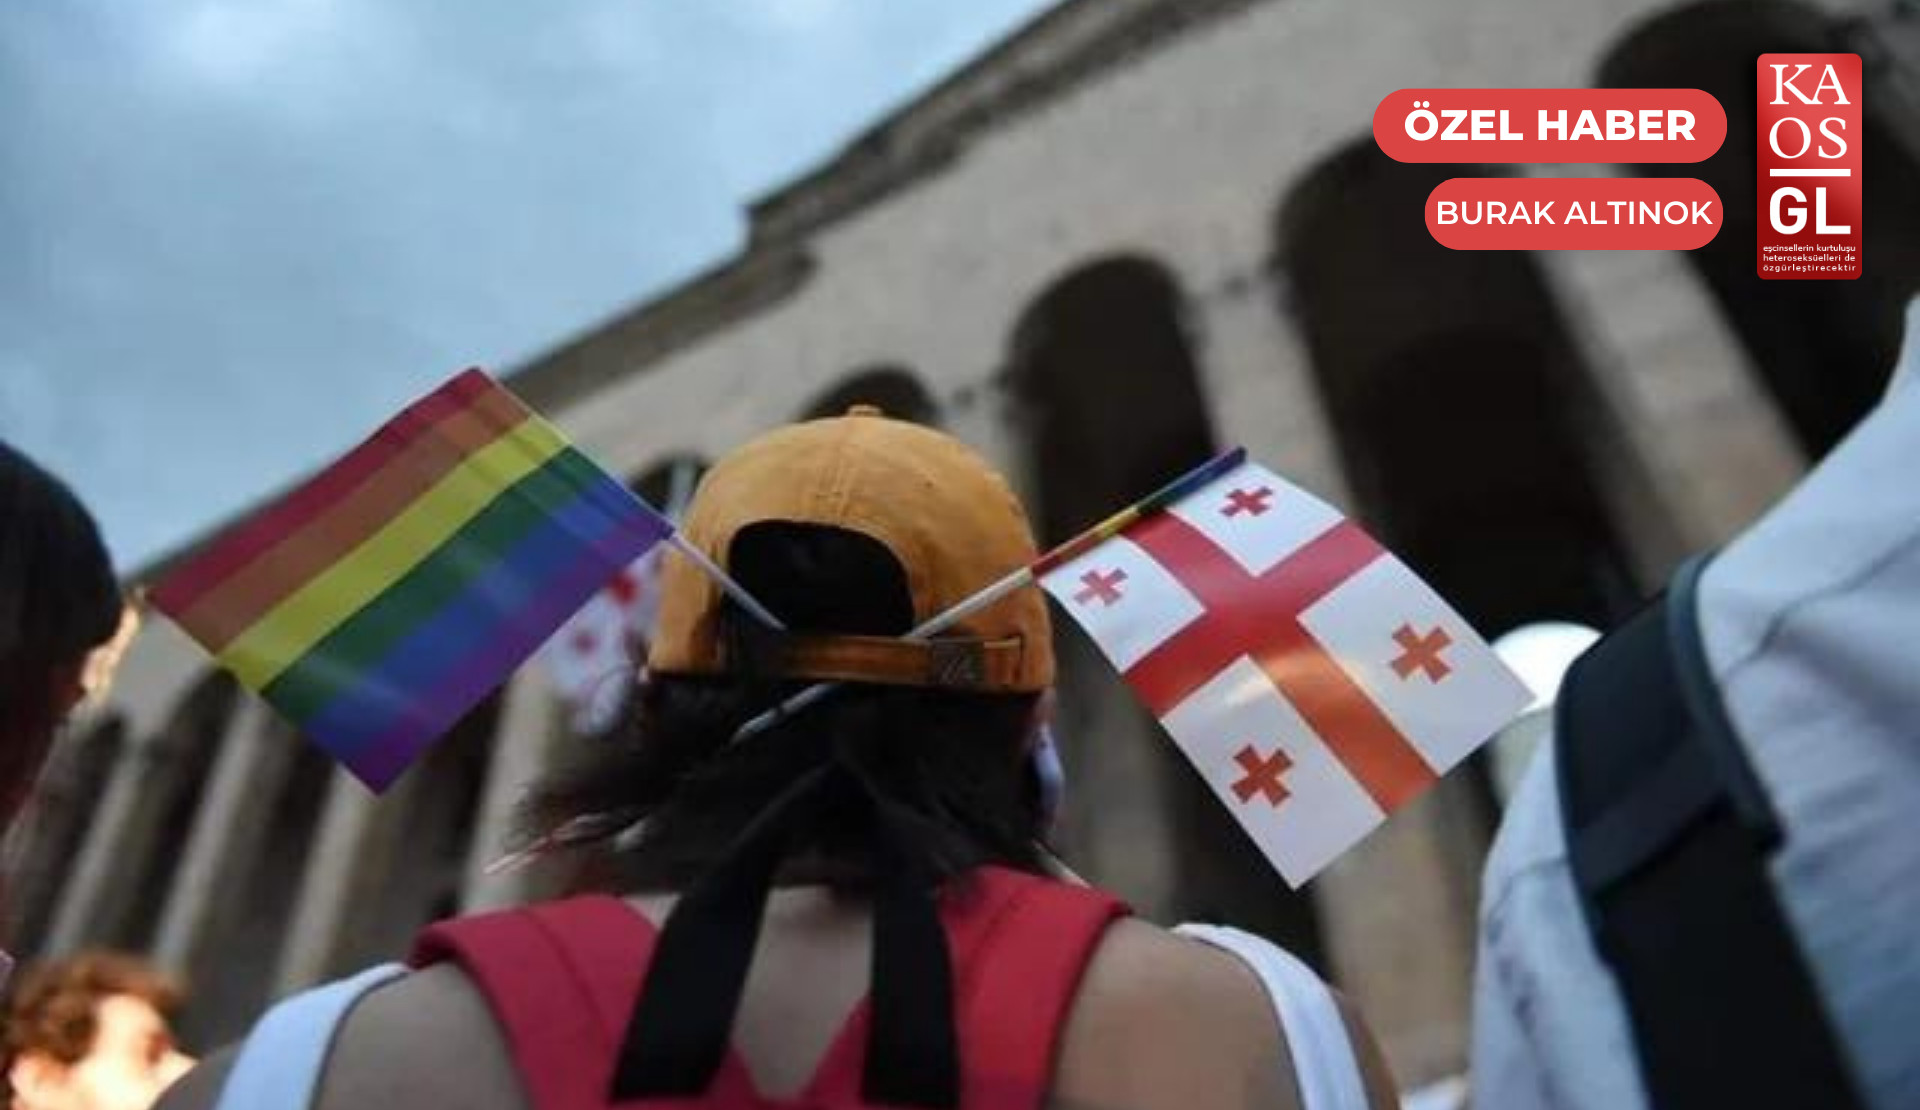 Gürcistan, ‘Ulusal İnsan Hakları Eylem Planı’nı yayımladı: LGBTİ+’lara yer yok | Kaos GL - LGBTİ+ Haber Portalı Haber